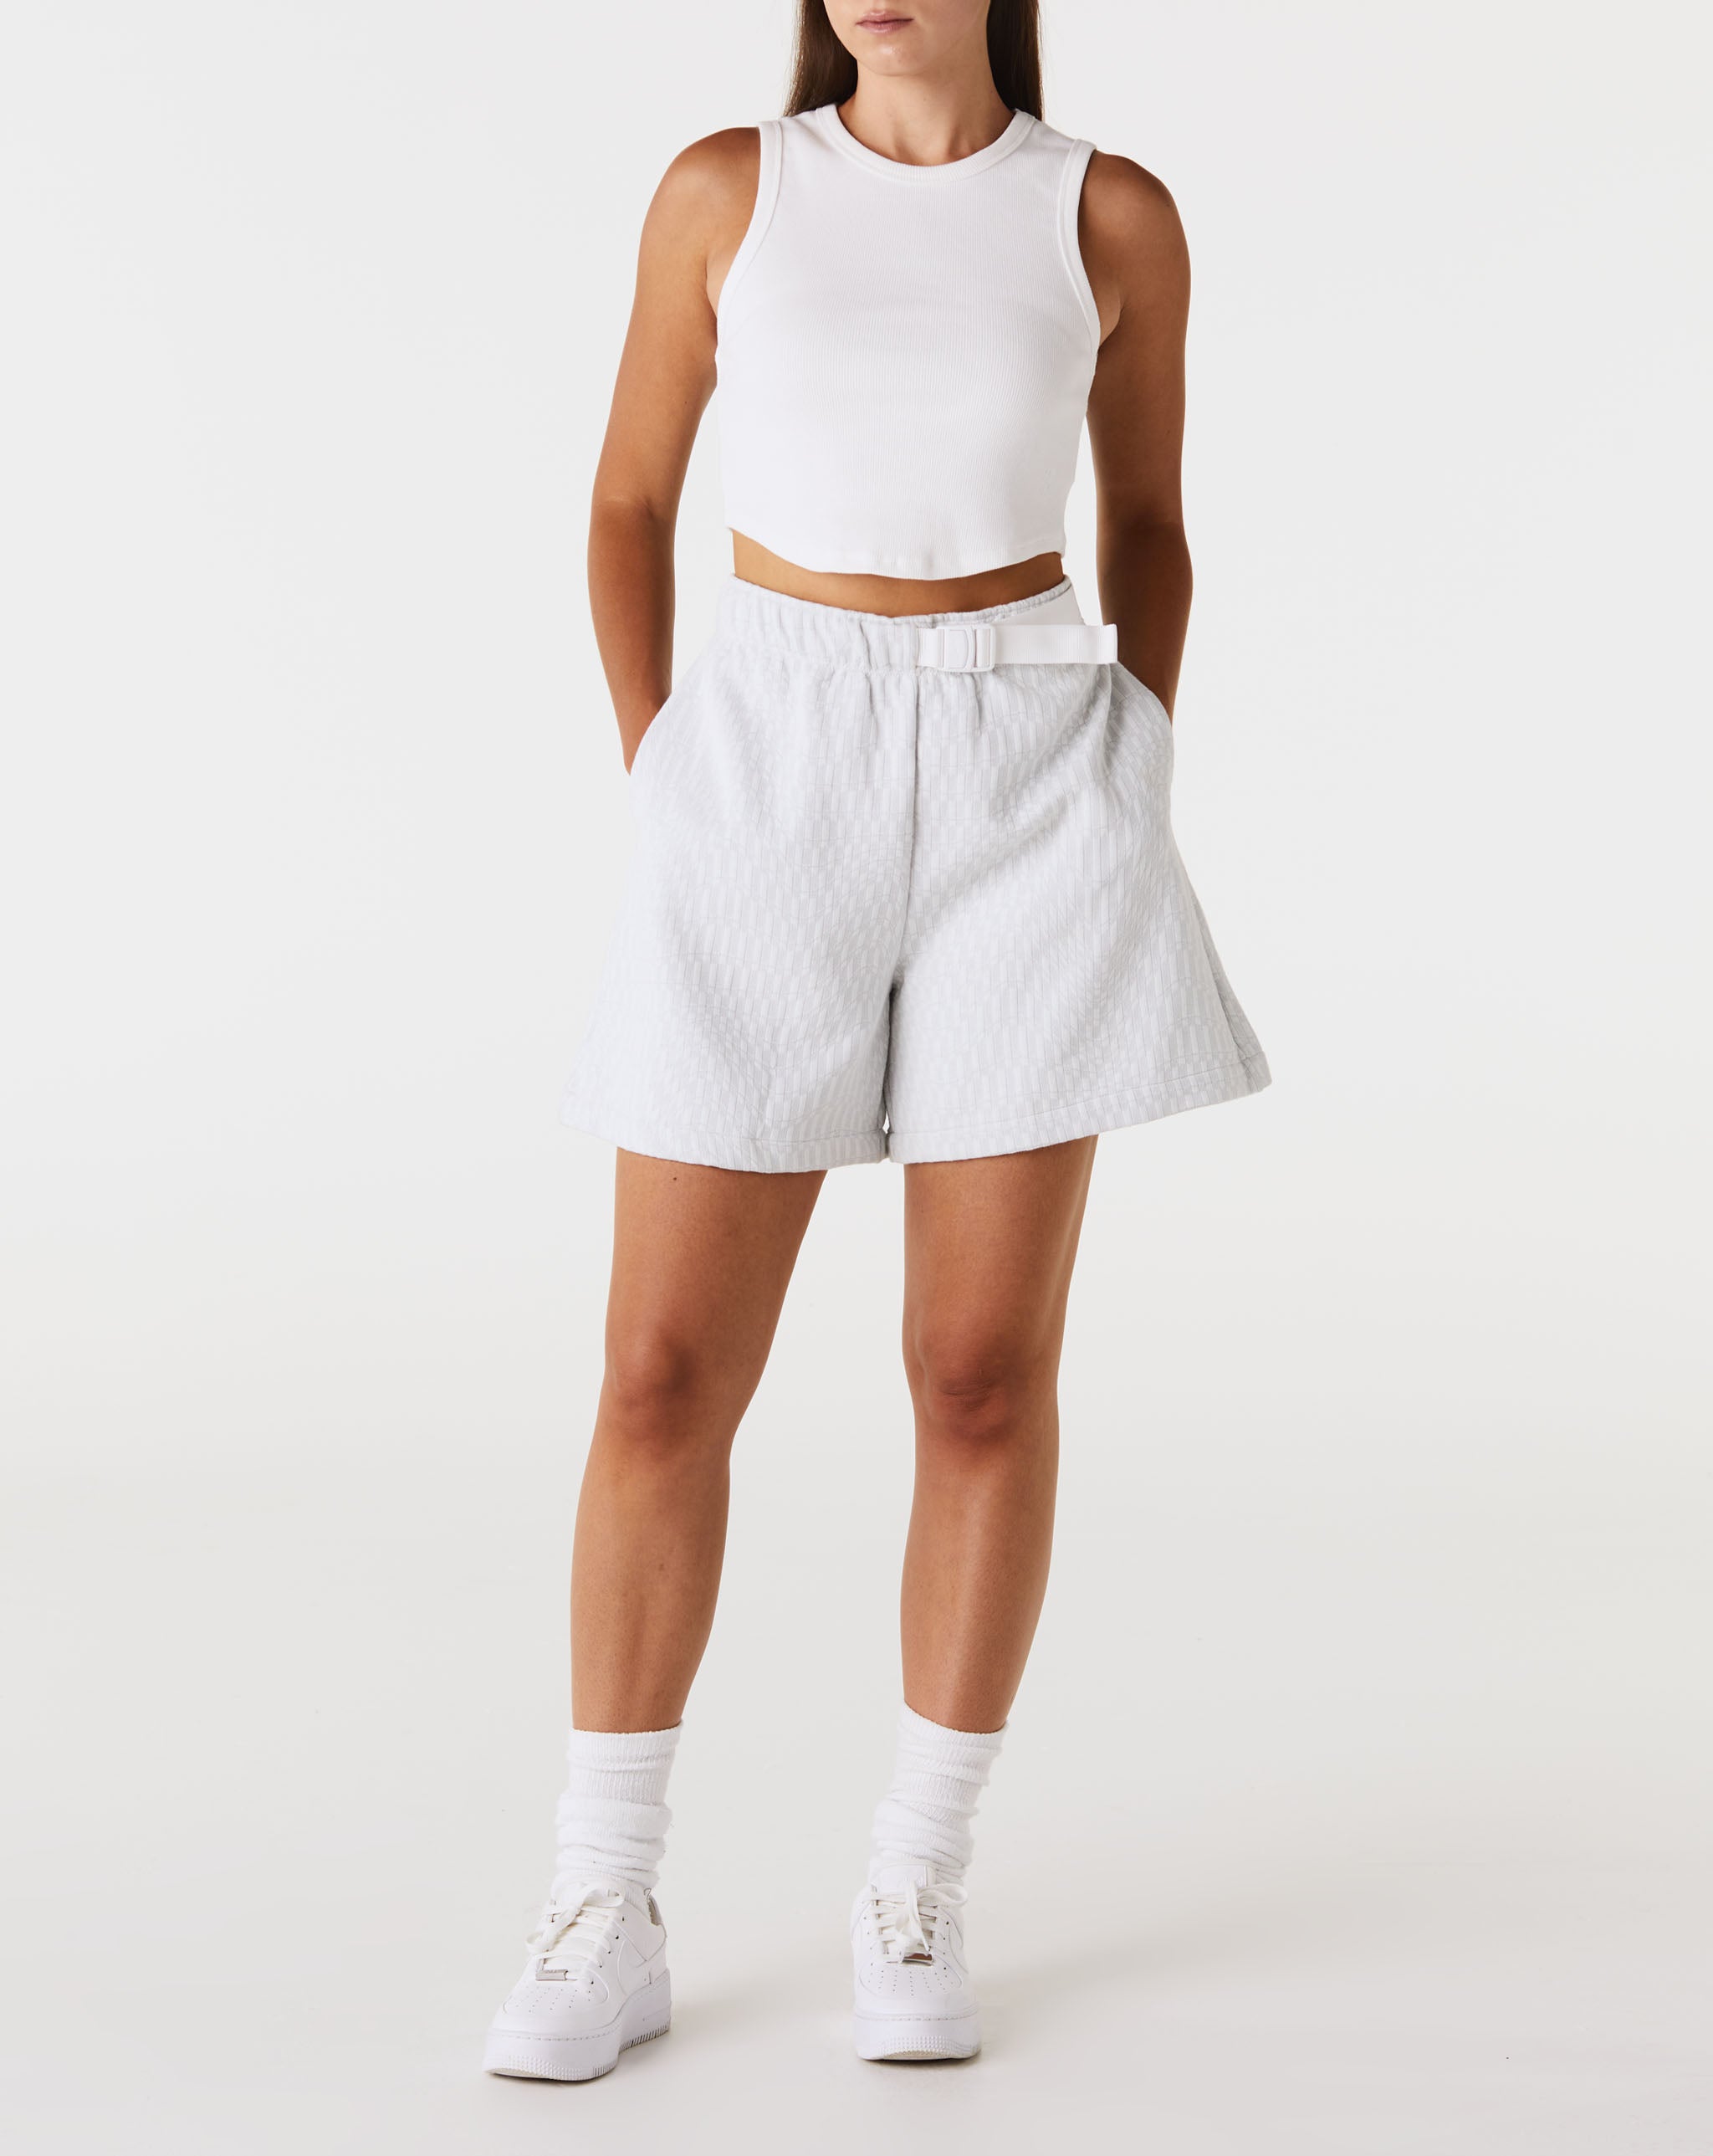 Nike Women's Tech Pack Shorts  - Cheap Urlfreeze Jordan outlet